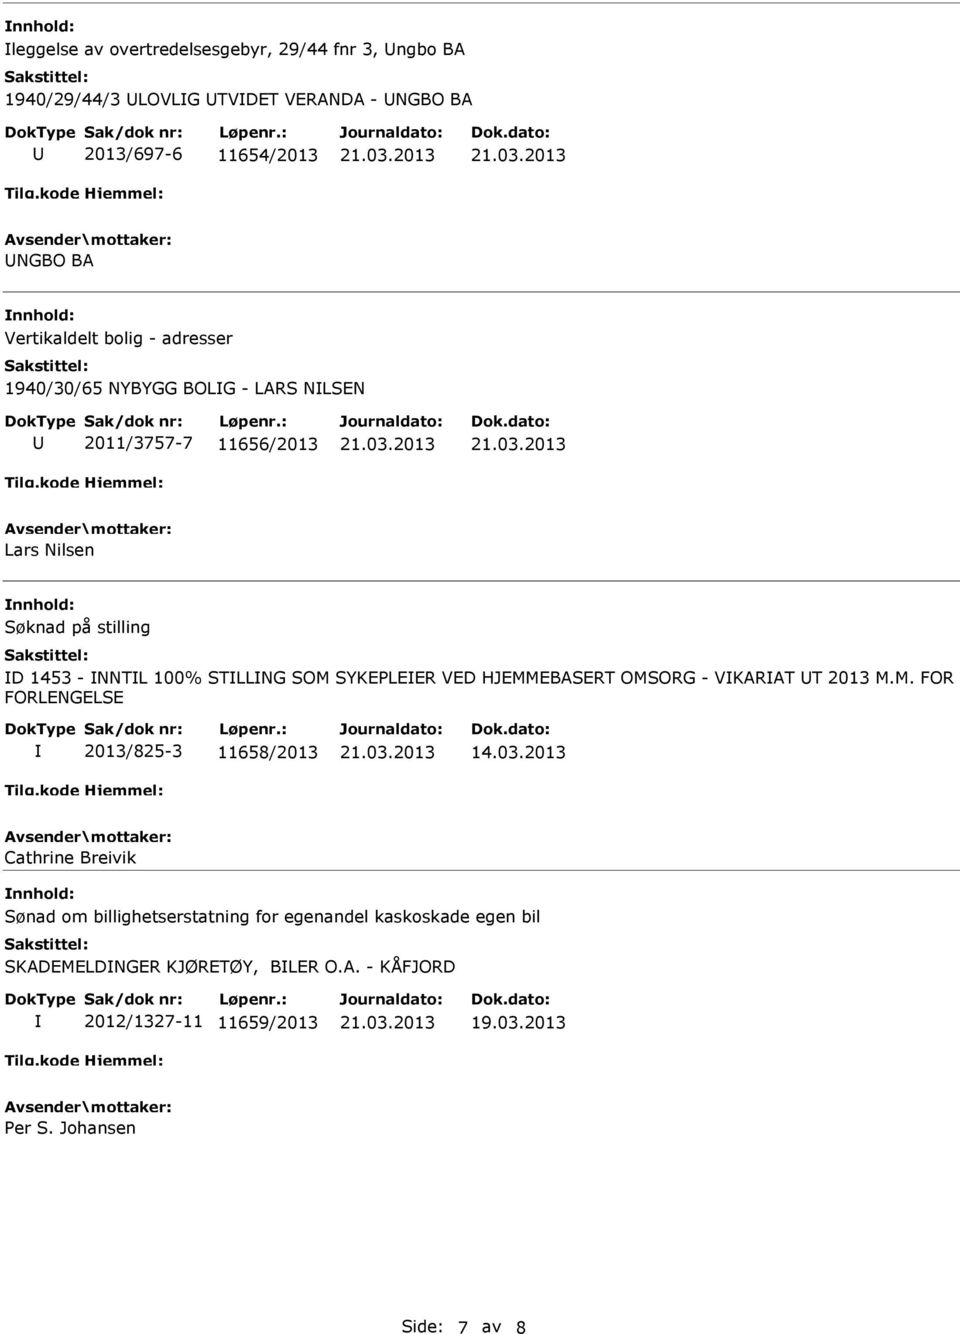 SYKEPLEER VED HJEMMEBASERT OMSORG - VKARAT T 2013 M.M. FOR FORLENGELSE 2013/825-3 11658/2013 14.03.